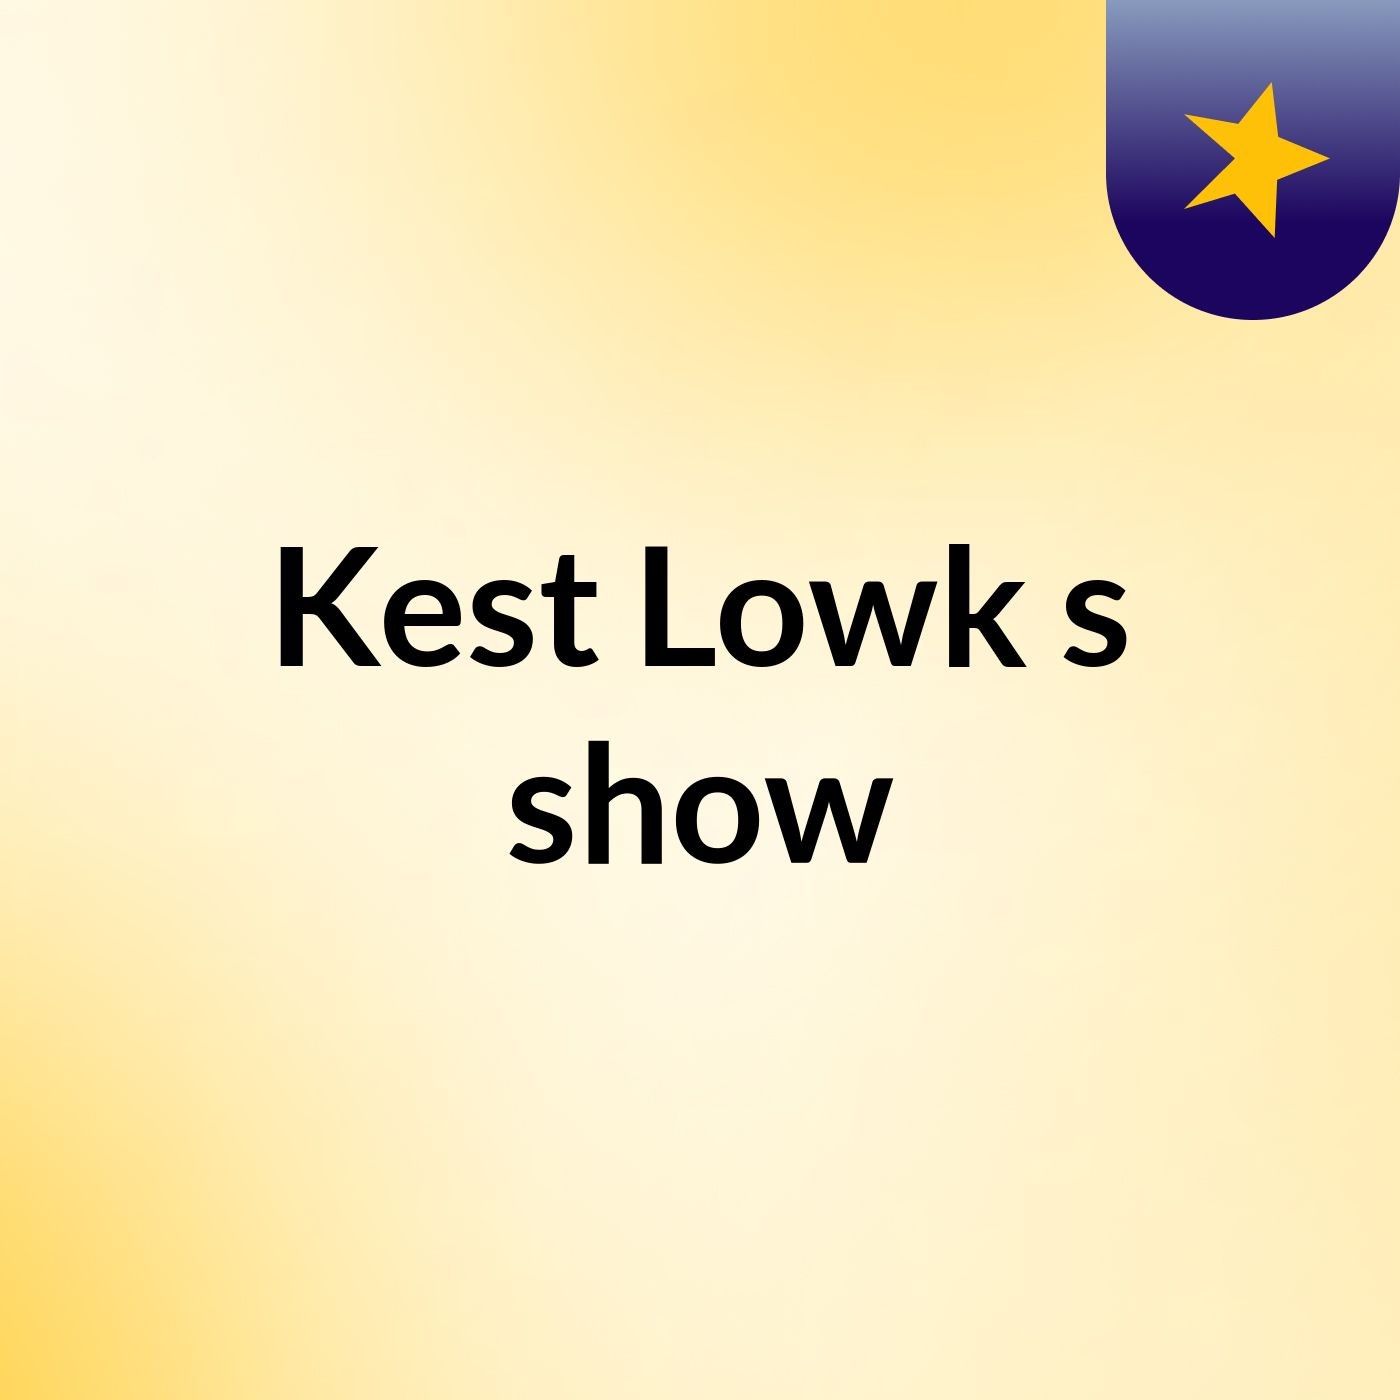 Kest Lowk's show